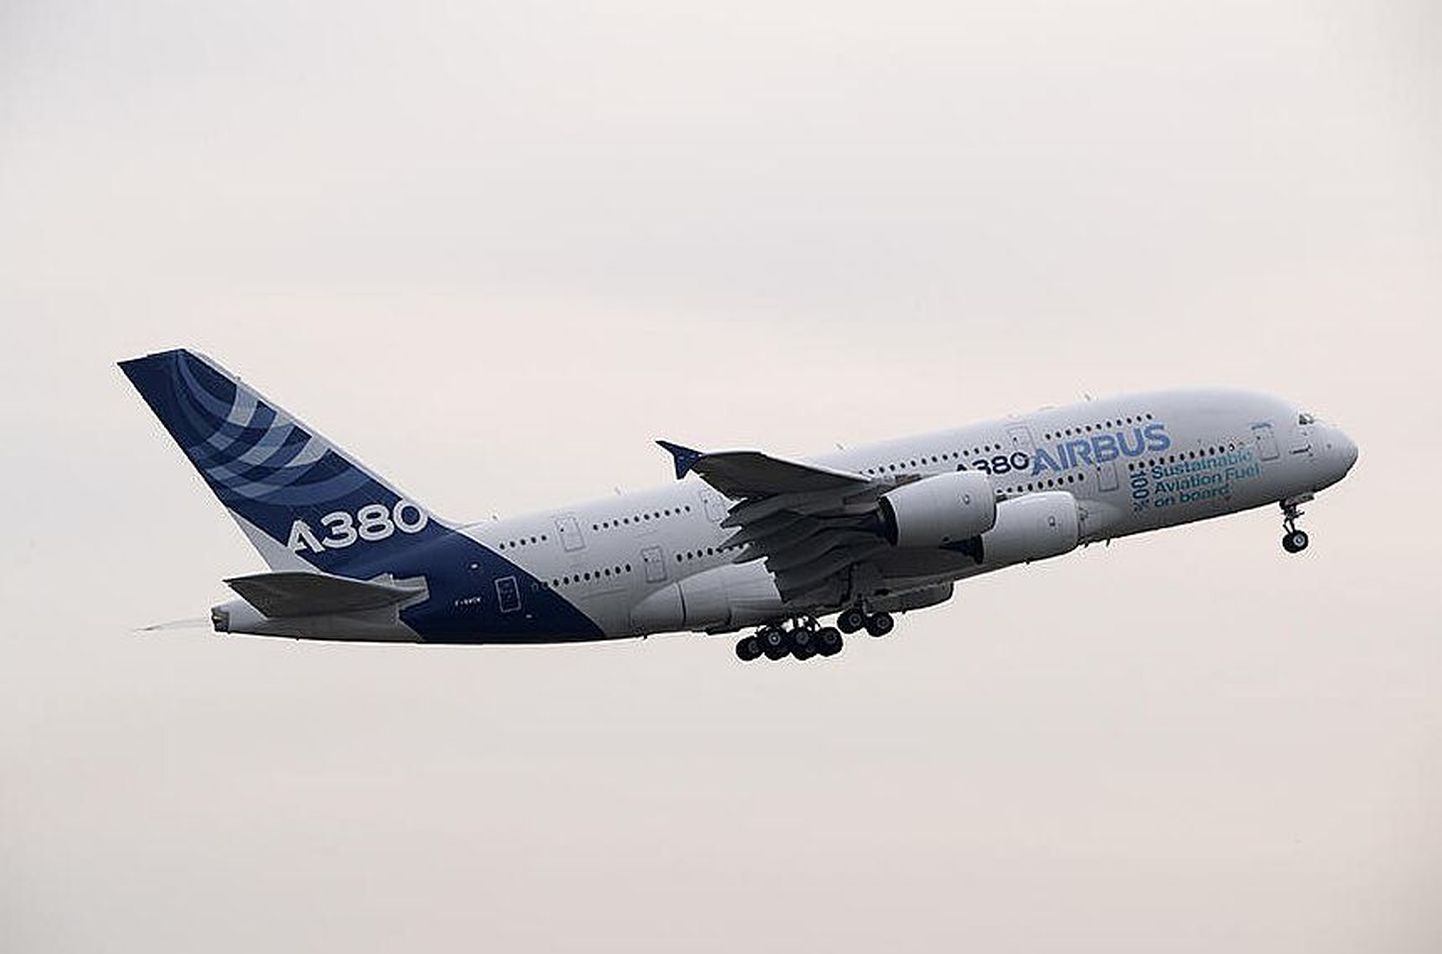 Airbus A380 ehk maailma suurim reisilennuk on valmis lendama 100% taastuvallikatest kütusega. Teoorias pole uut naftat seega enam tulevikus vaja maapõuest ammutada lennukikütuse tootmiseks, kuid praktikas leidub veel mõnesid takistusi.